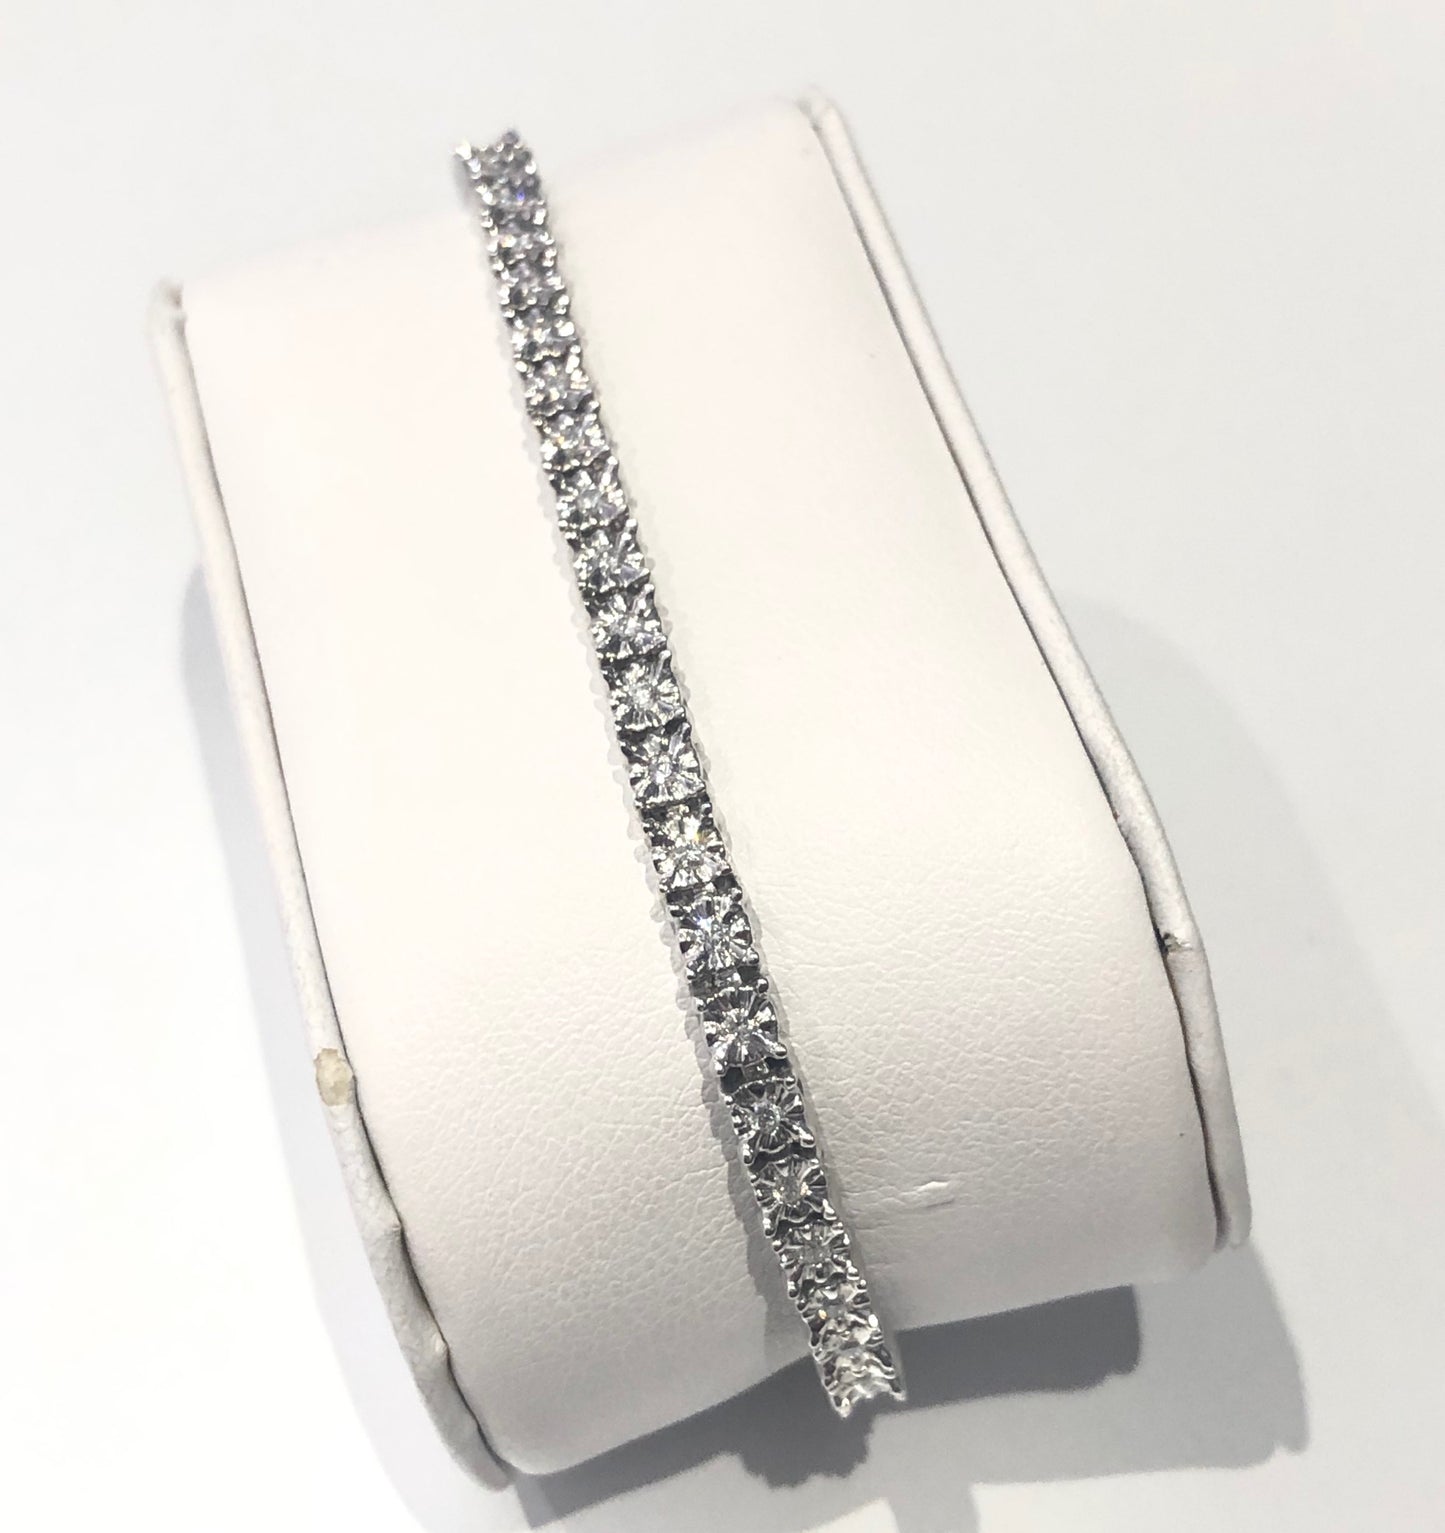 18ct White Gold Illusion Set Diamond Tennis Bracelet